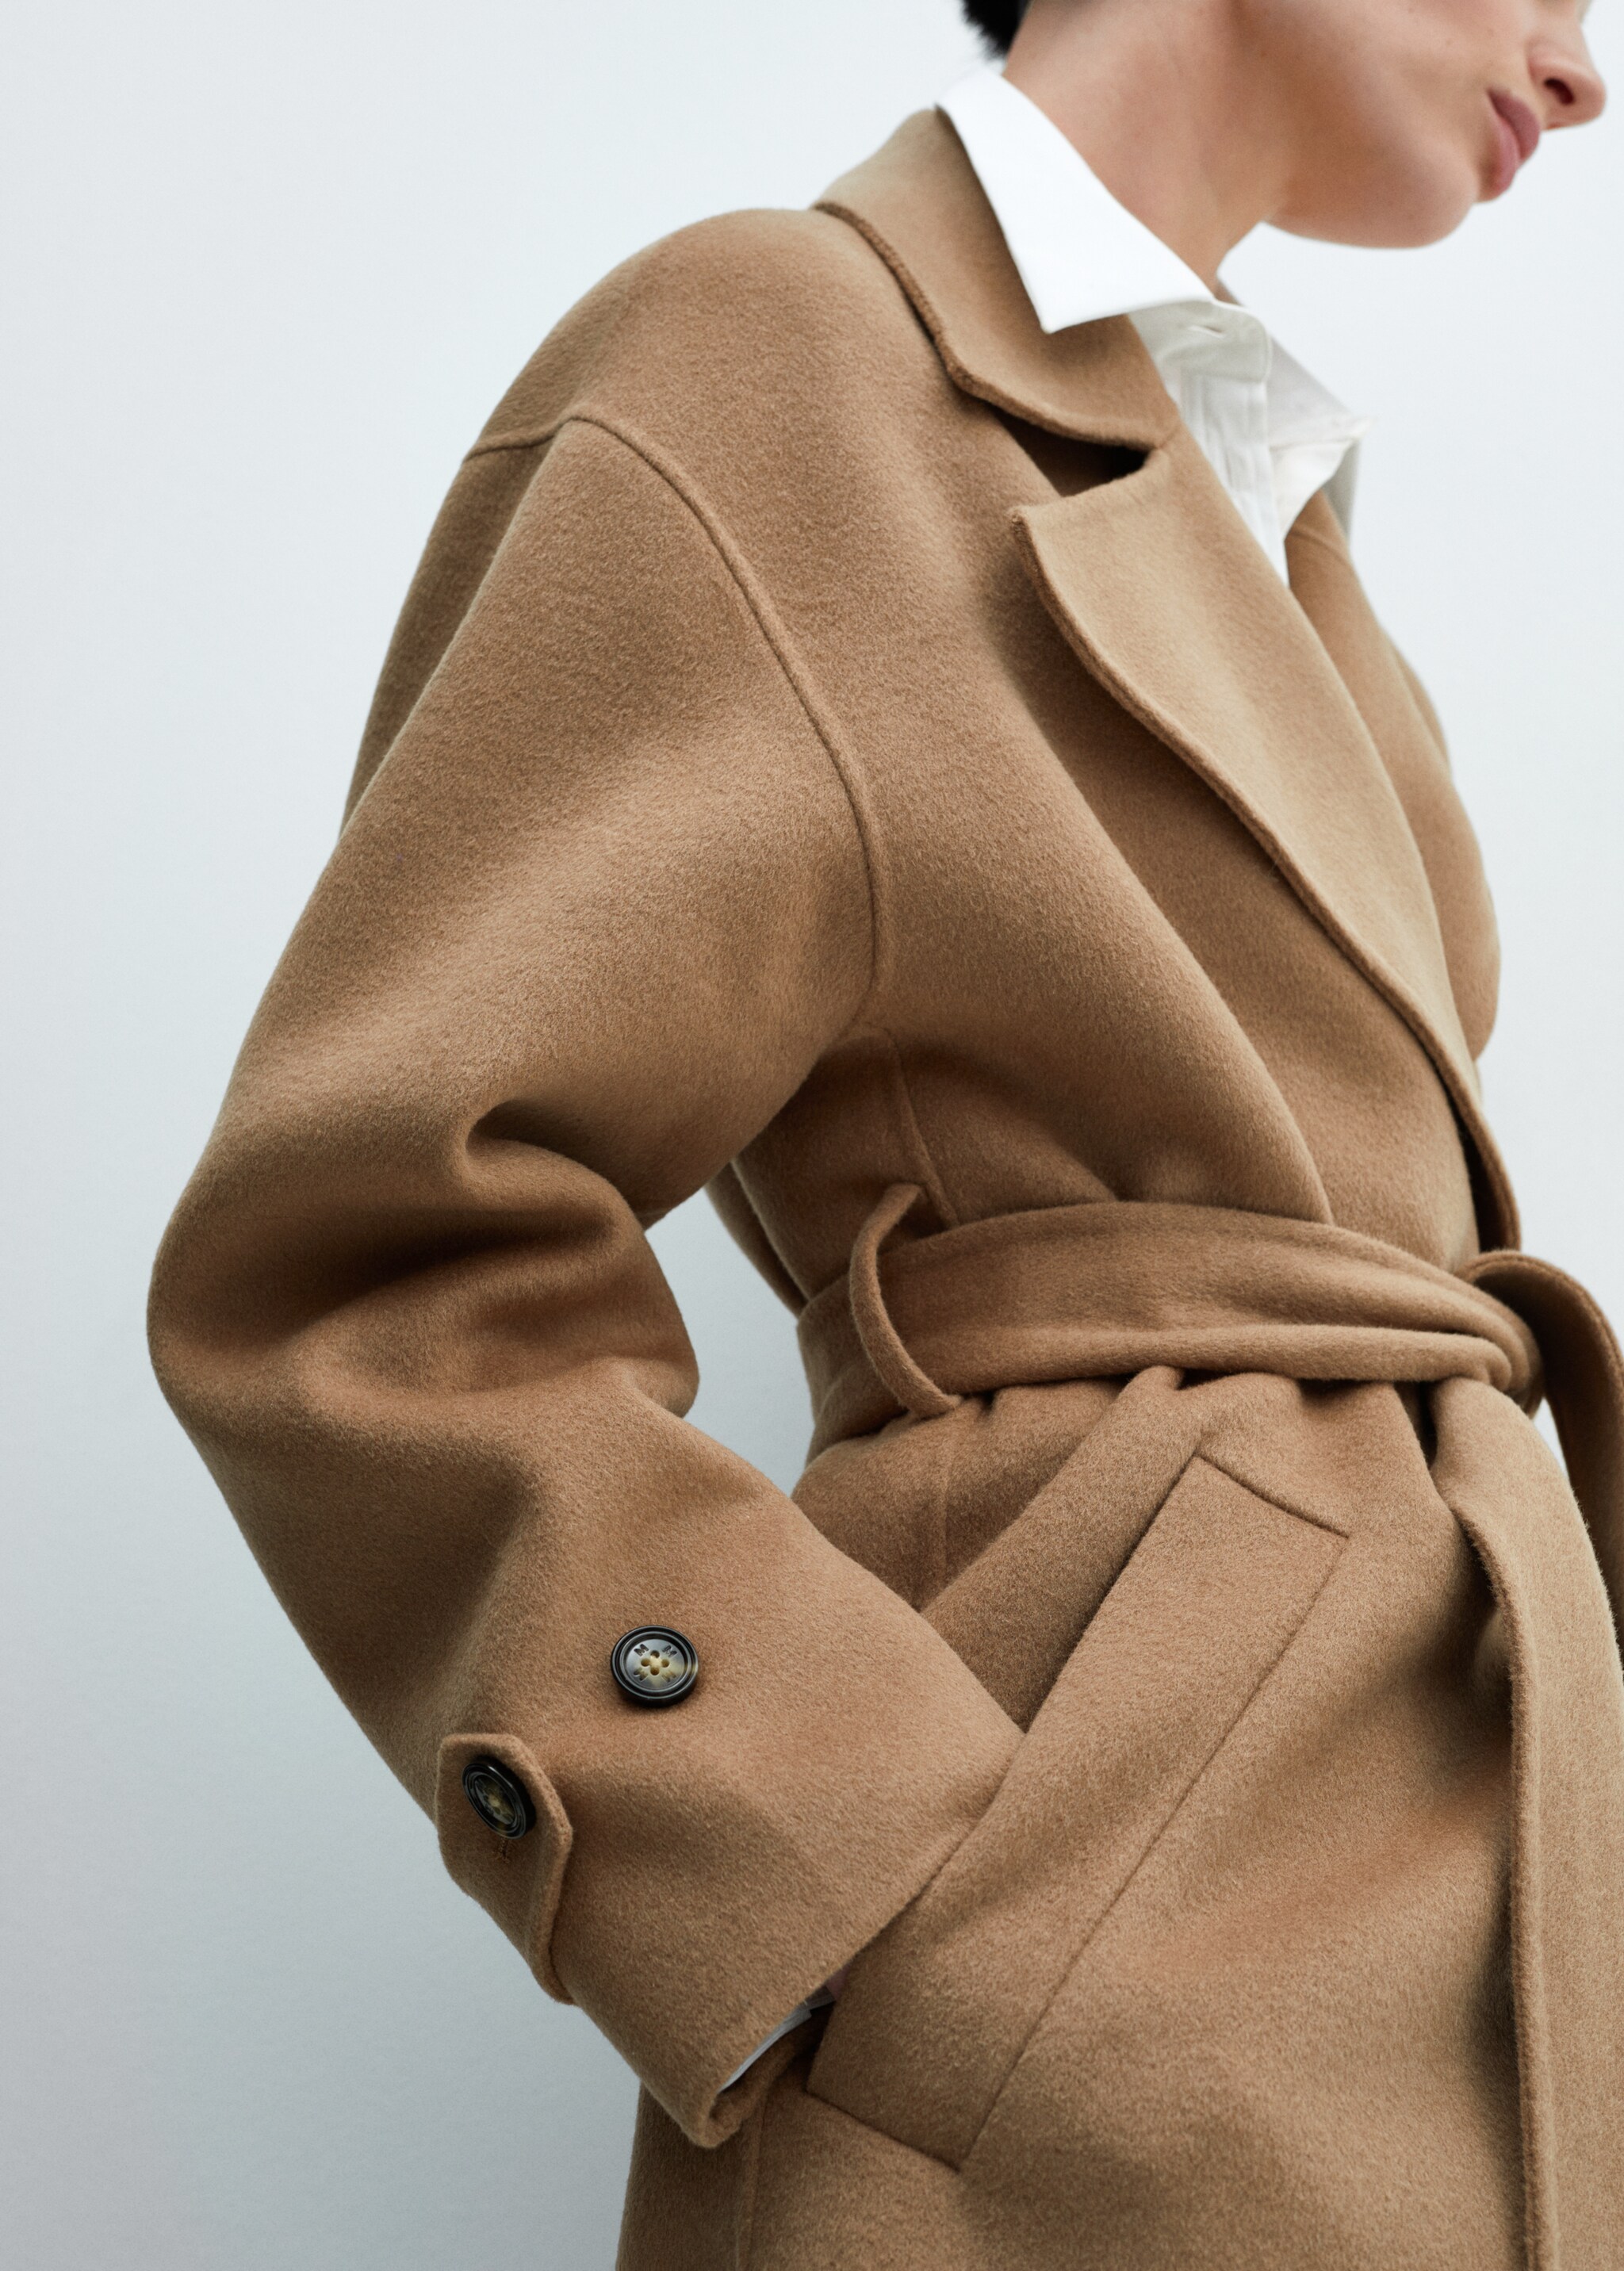 Woollen coat with belt - Details of the article 4